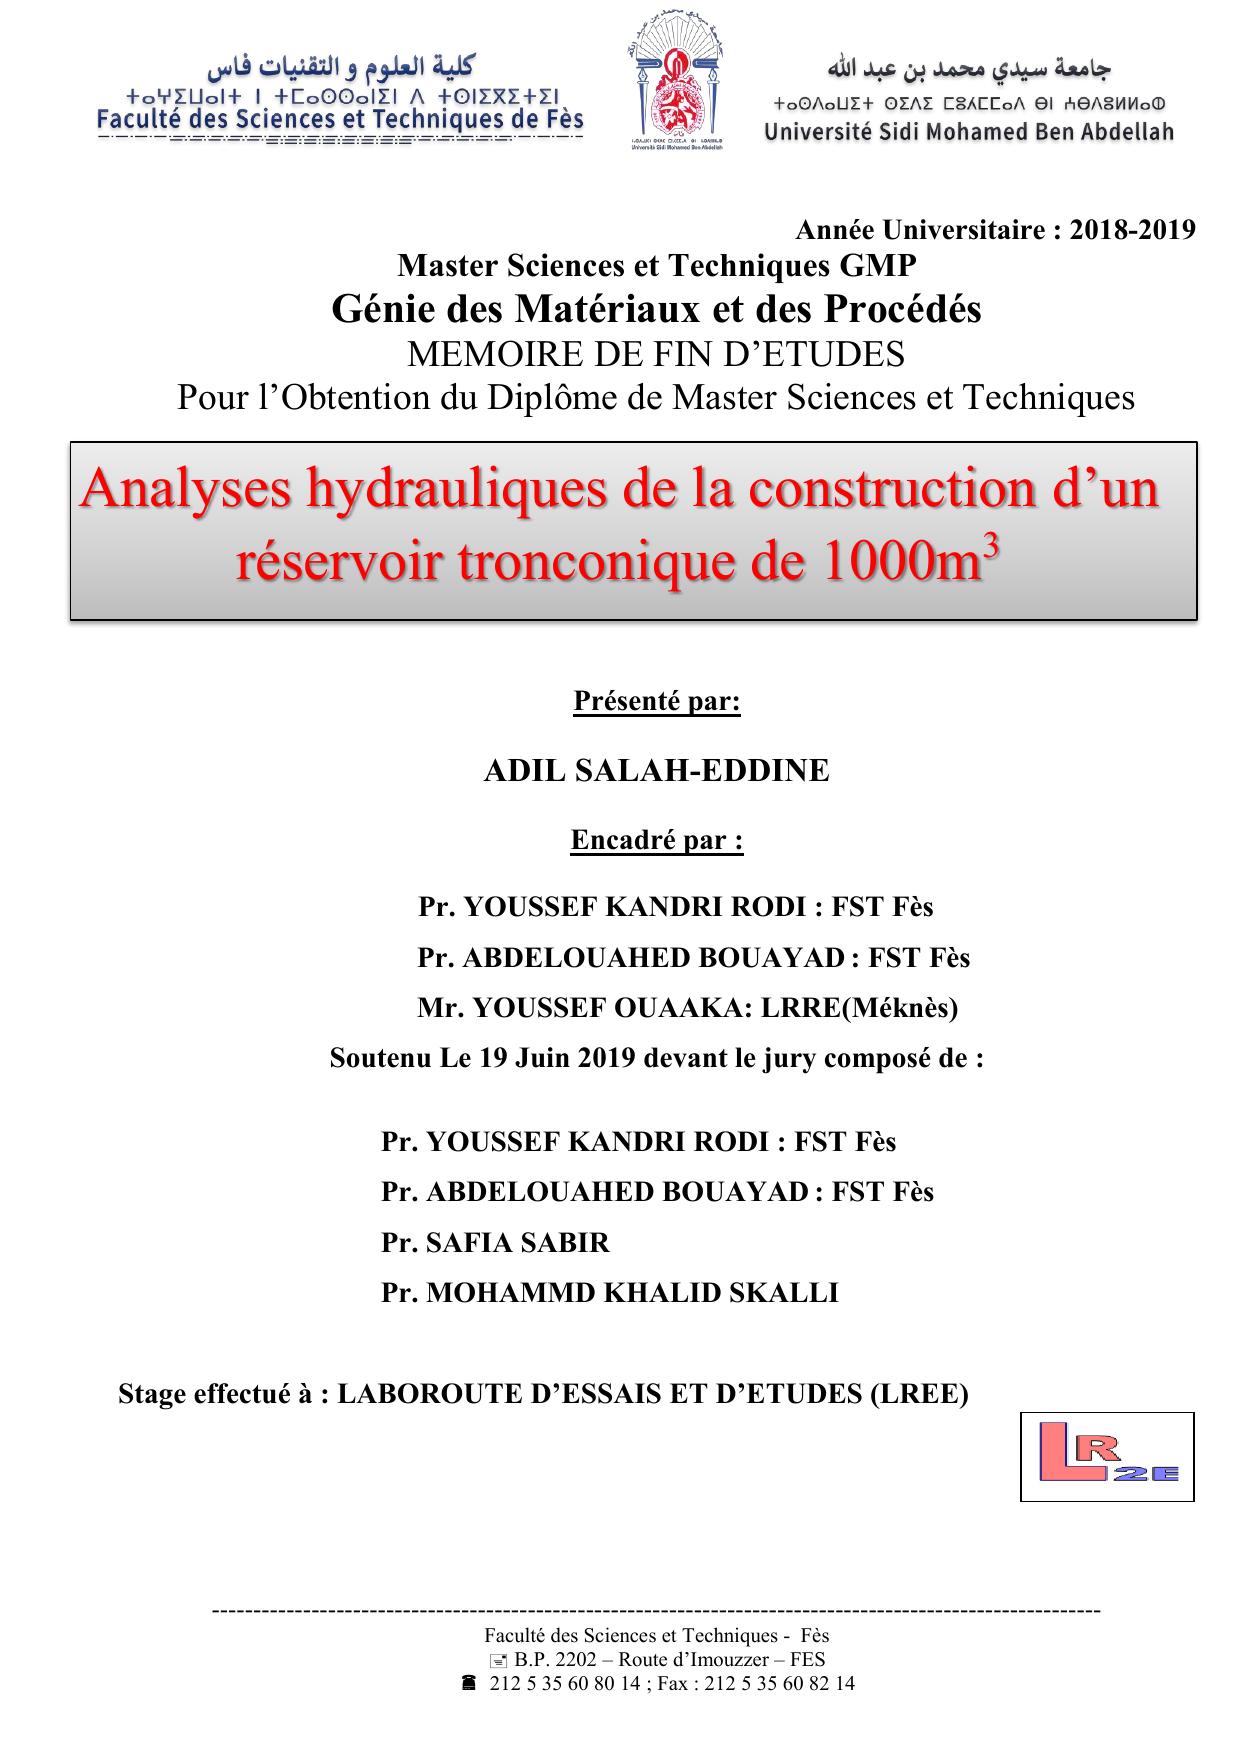 ANALYSES HYDRAULIQUES DE LA CONSTRUCTION D UN RESERVOIR TRONCONIQUE